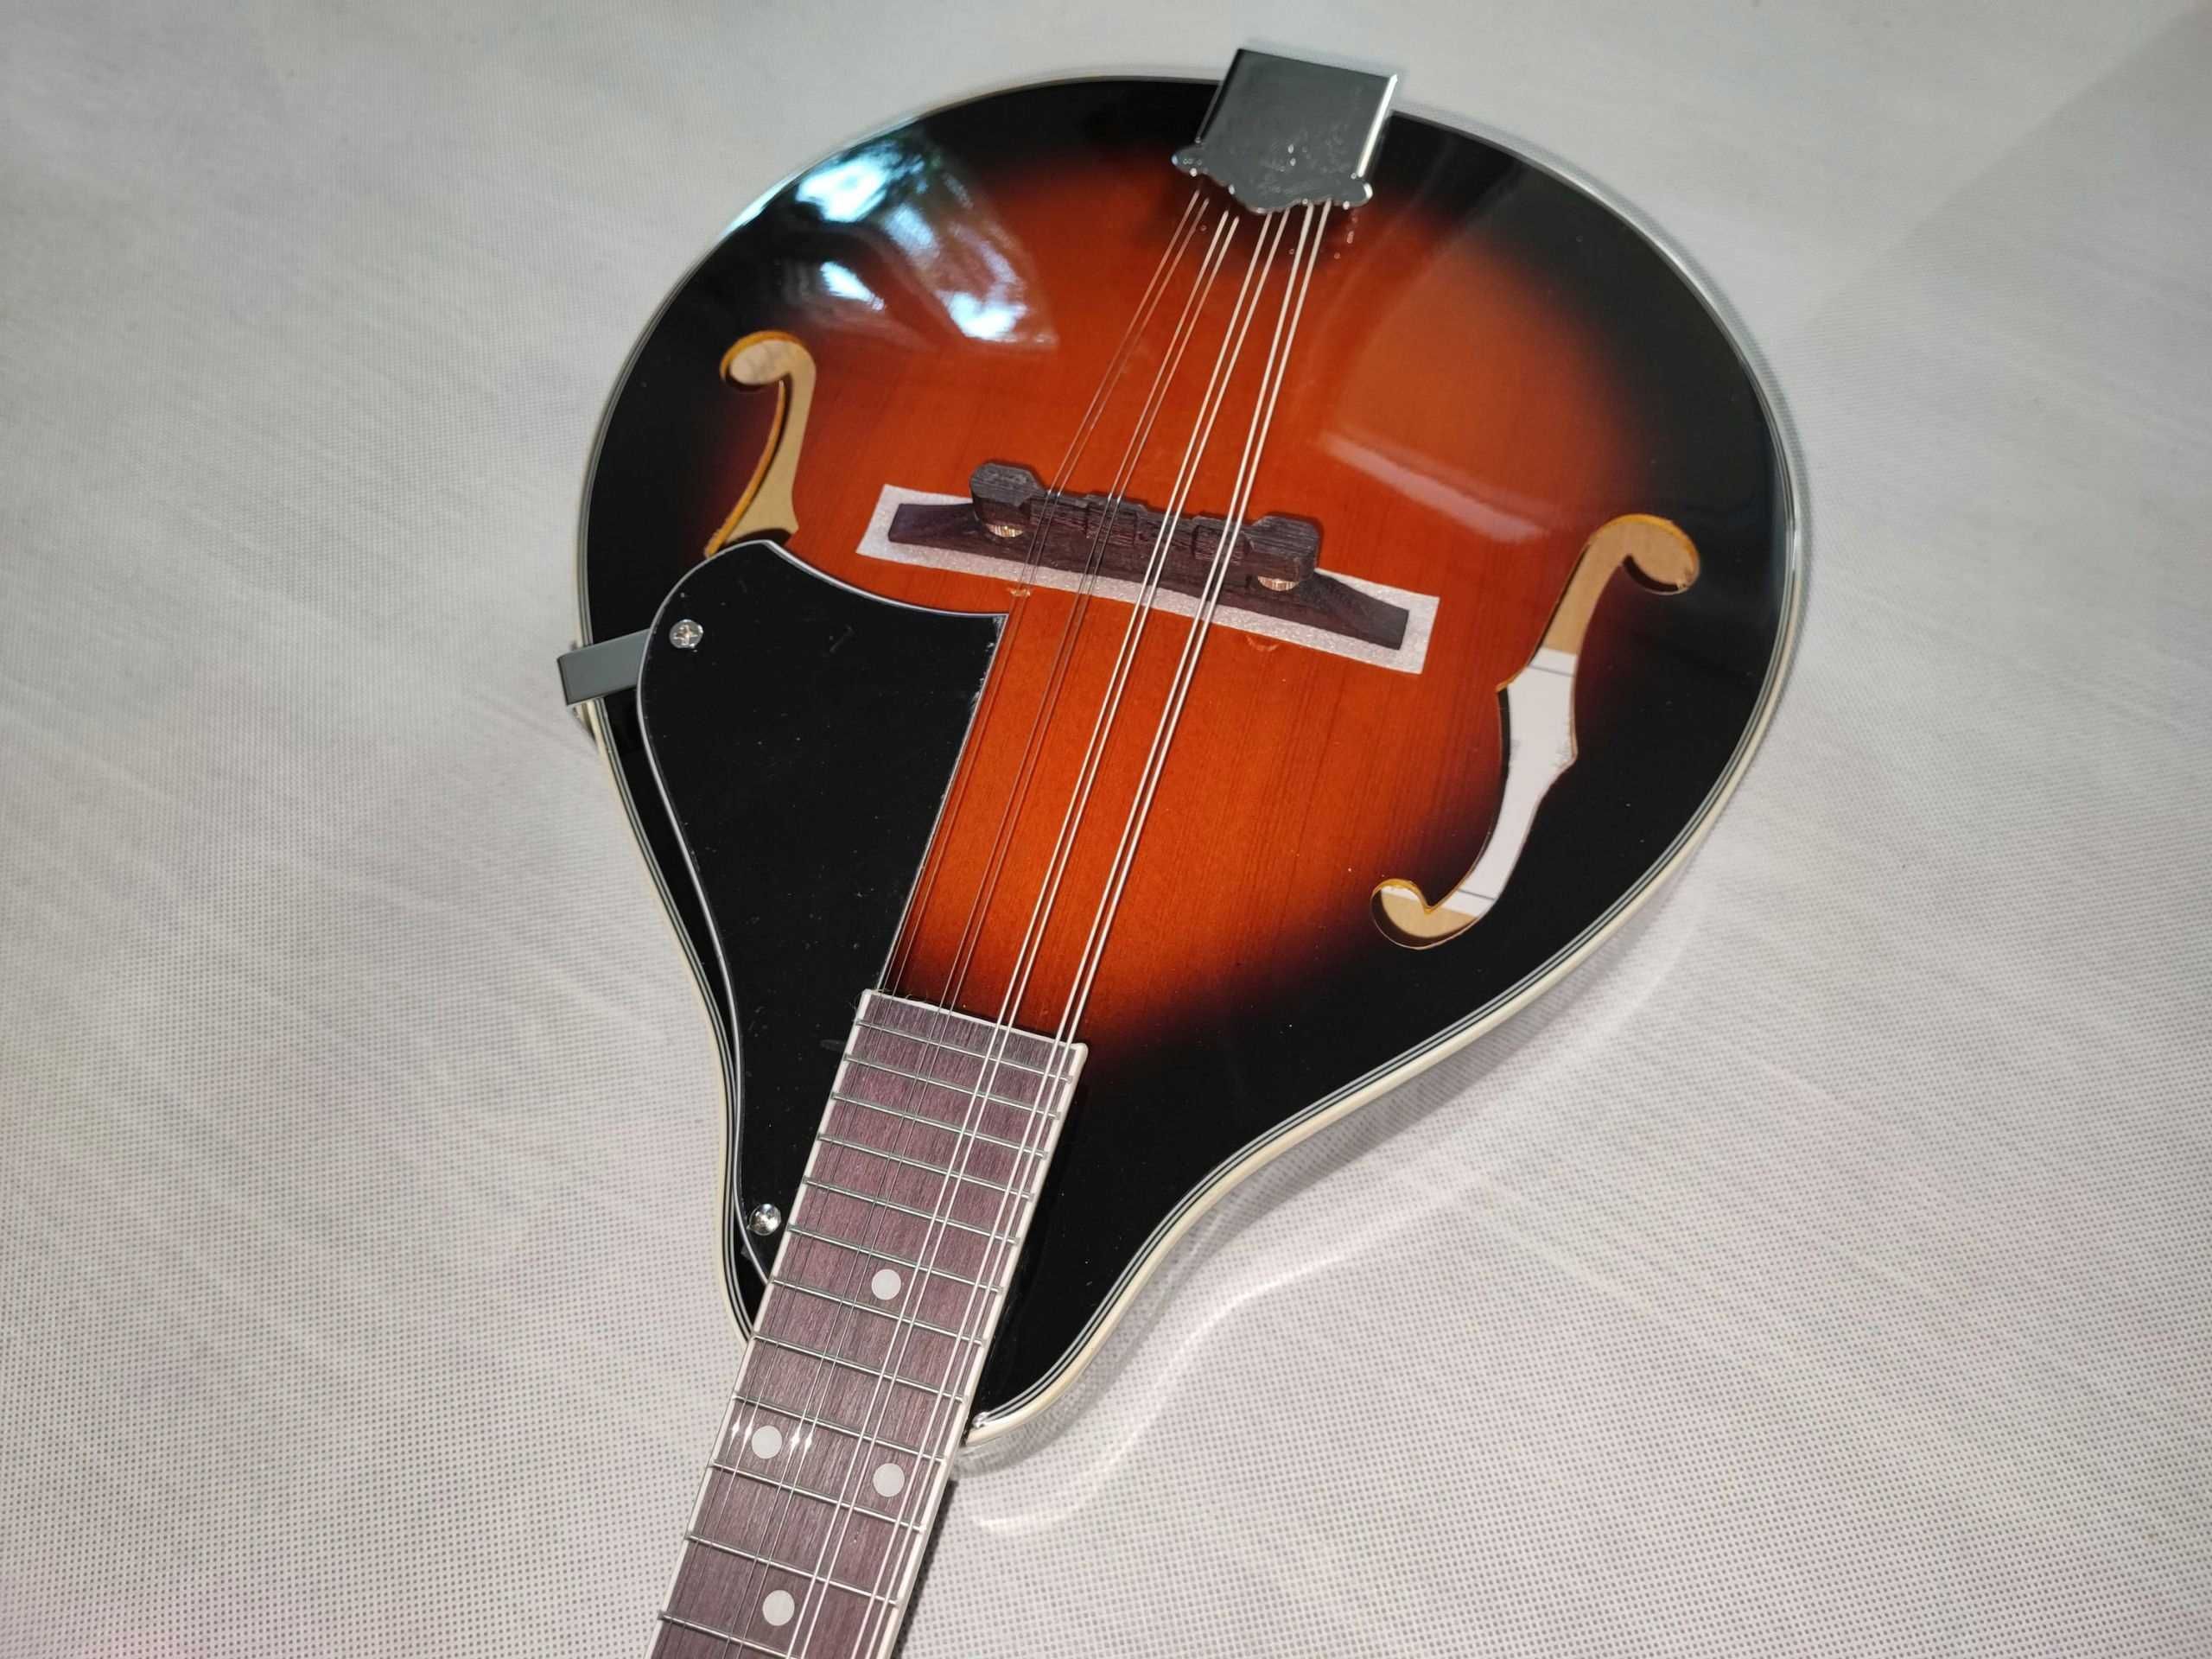 Harley Benton HBMA-50 mandoline VS mandolina nowa - USTAWIONA!